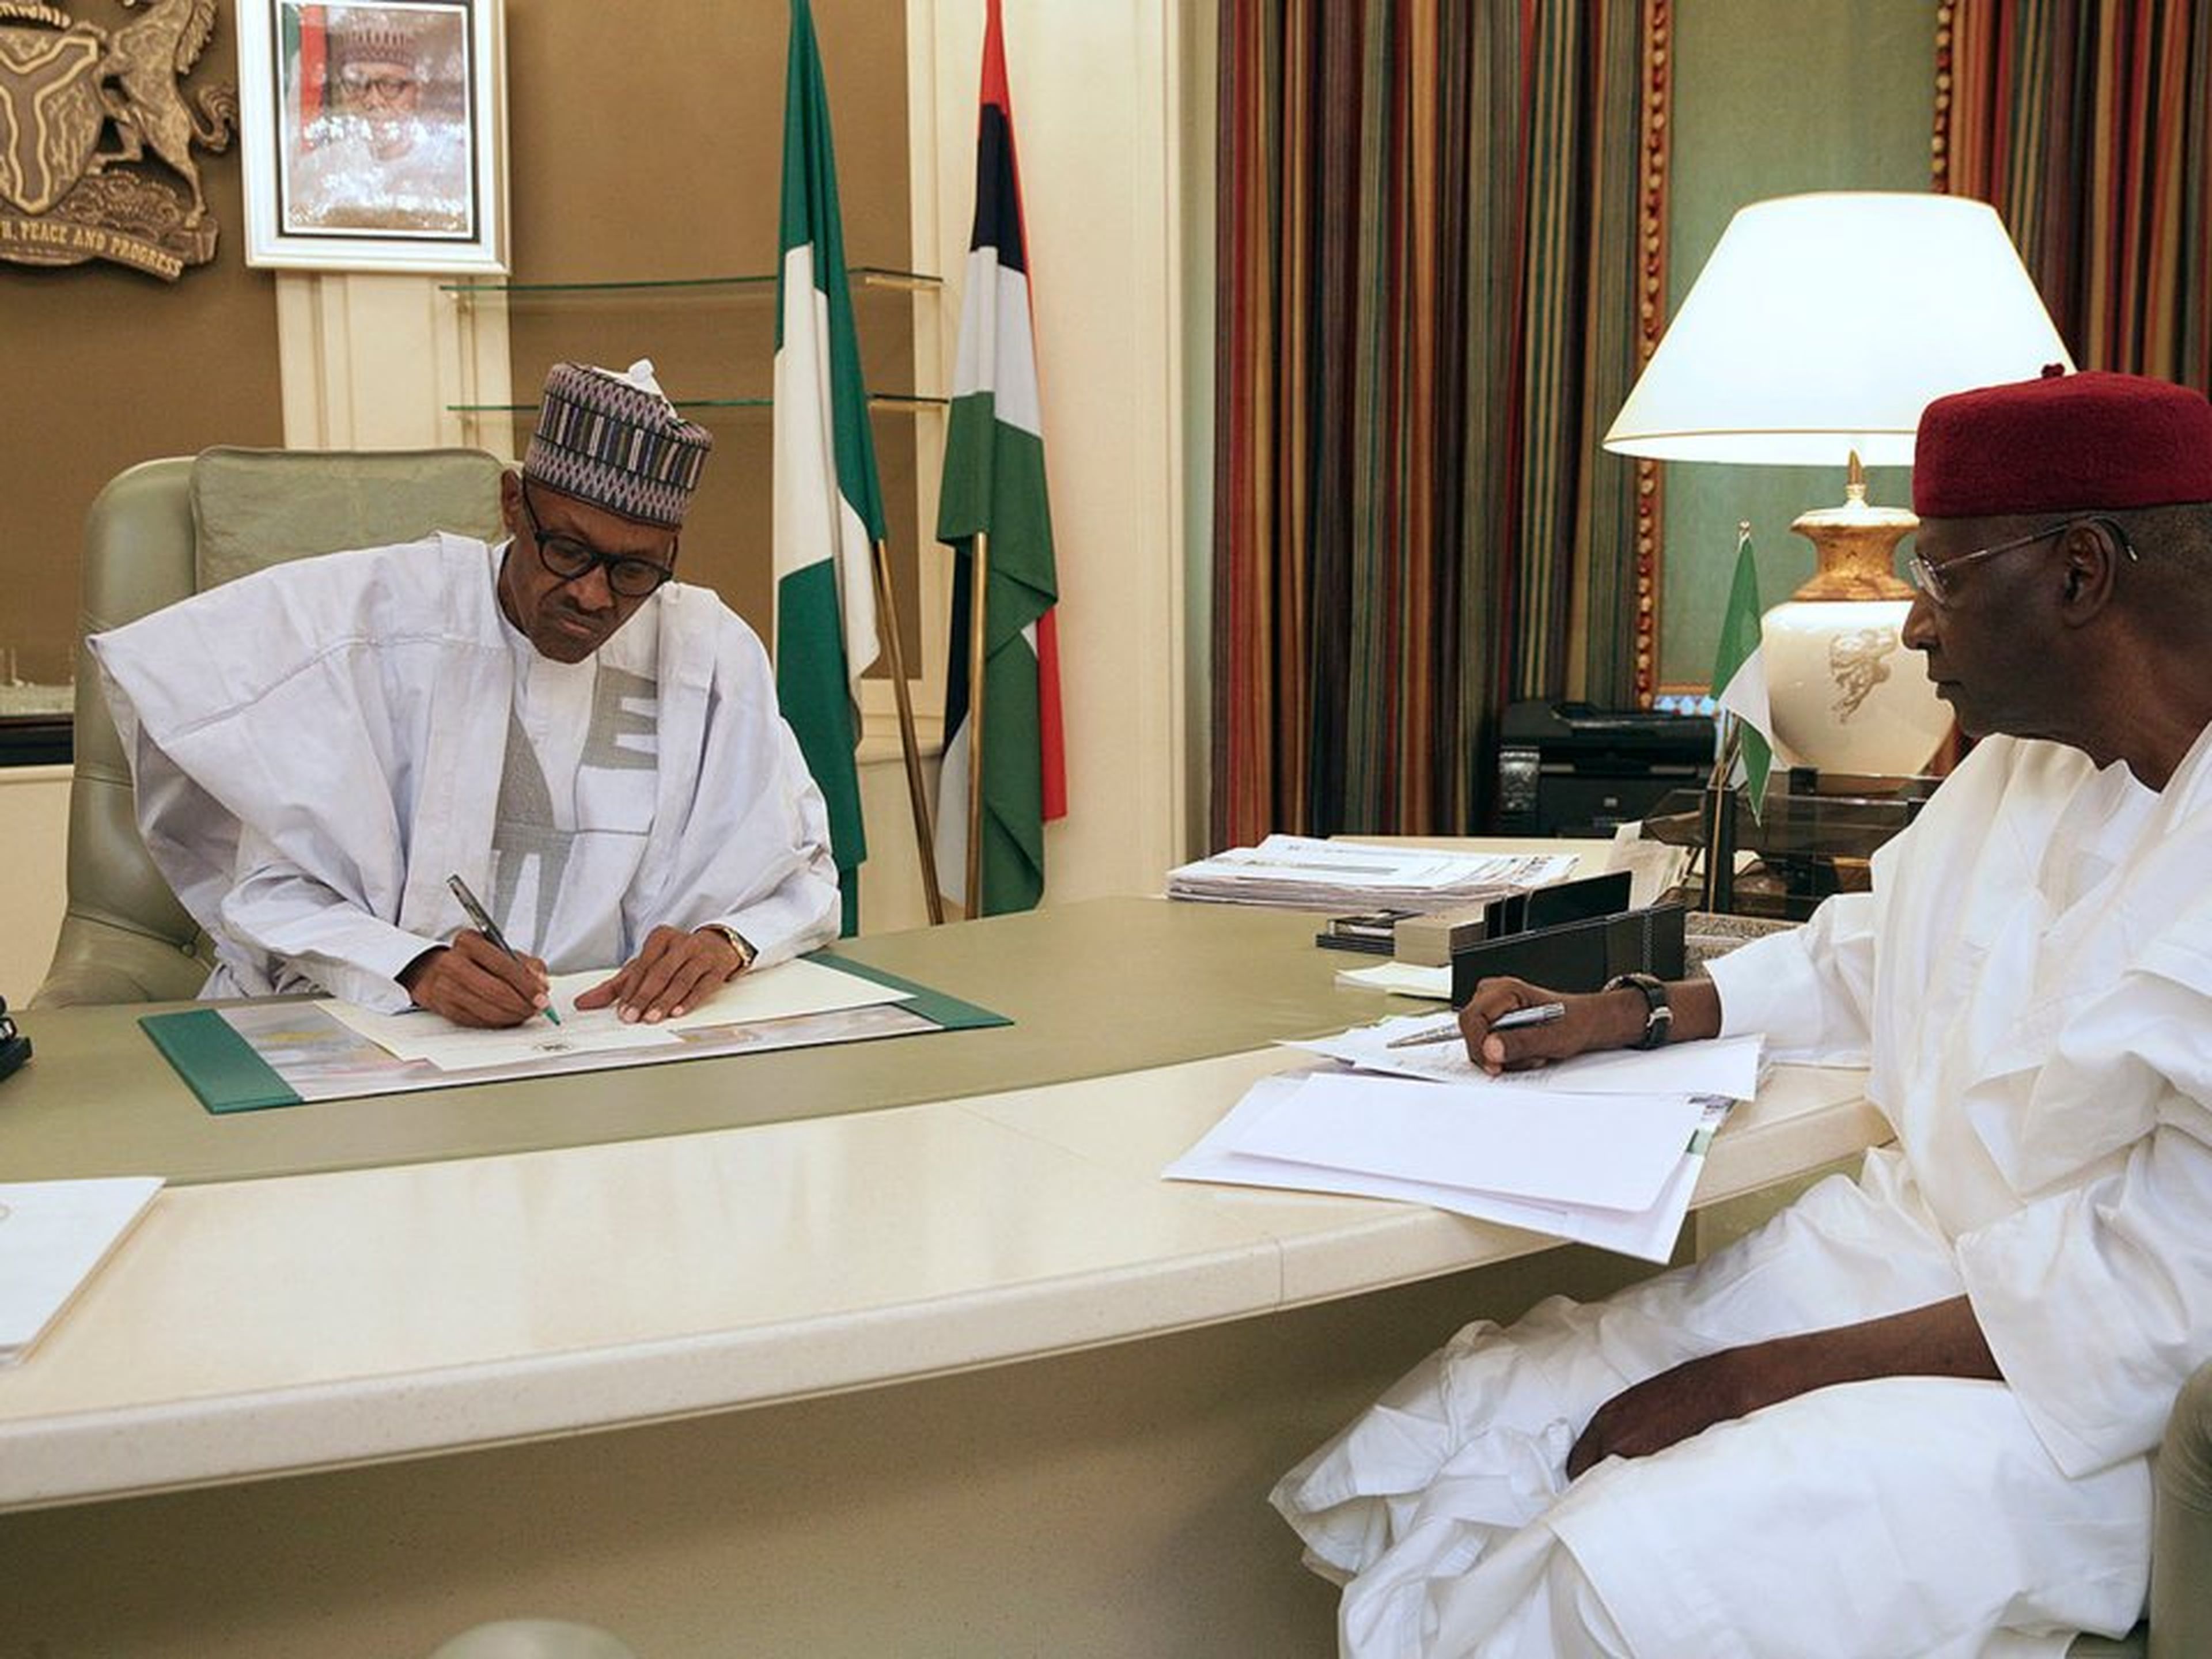 El presidente nigeriano Muhammadu Buhari en el despacho presidencial.